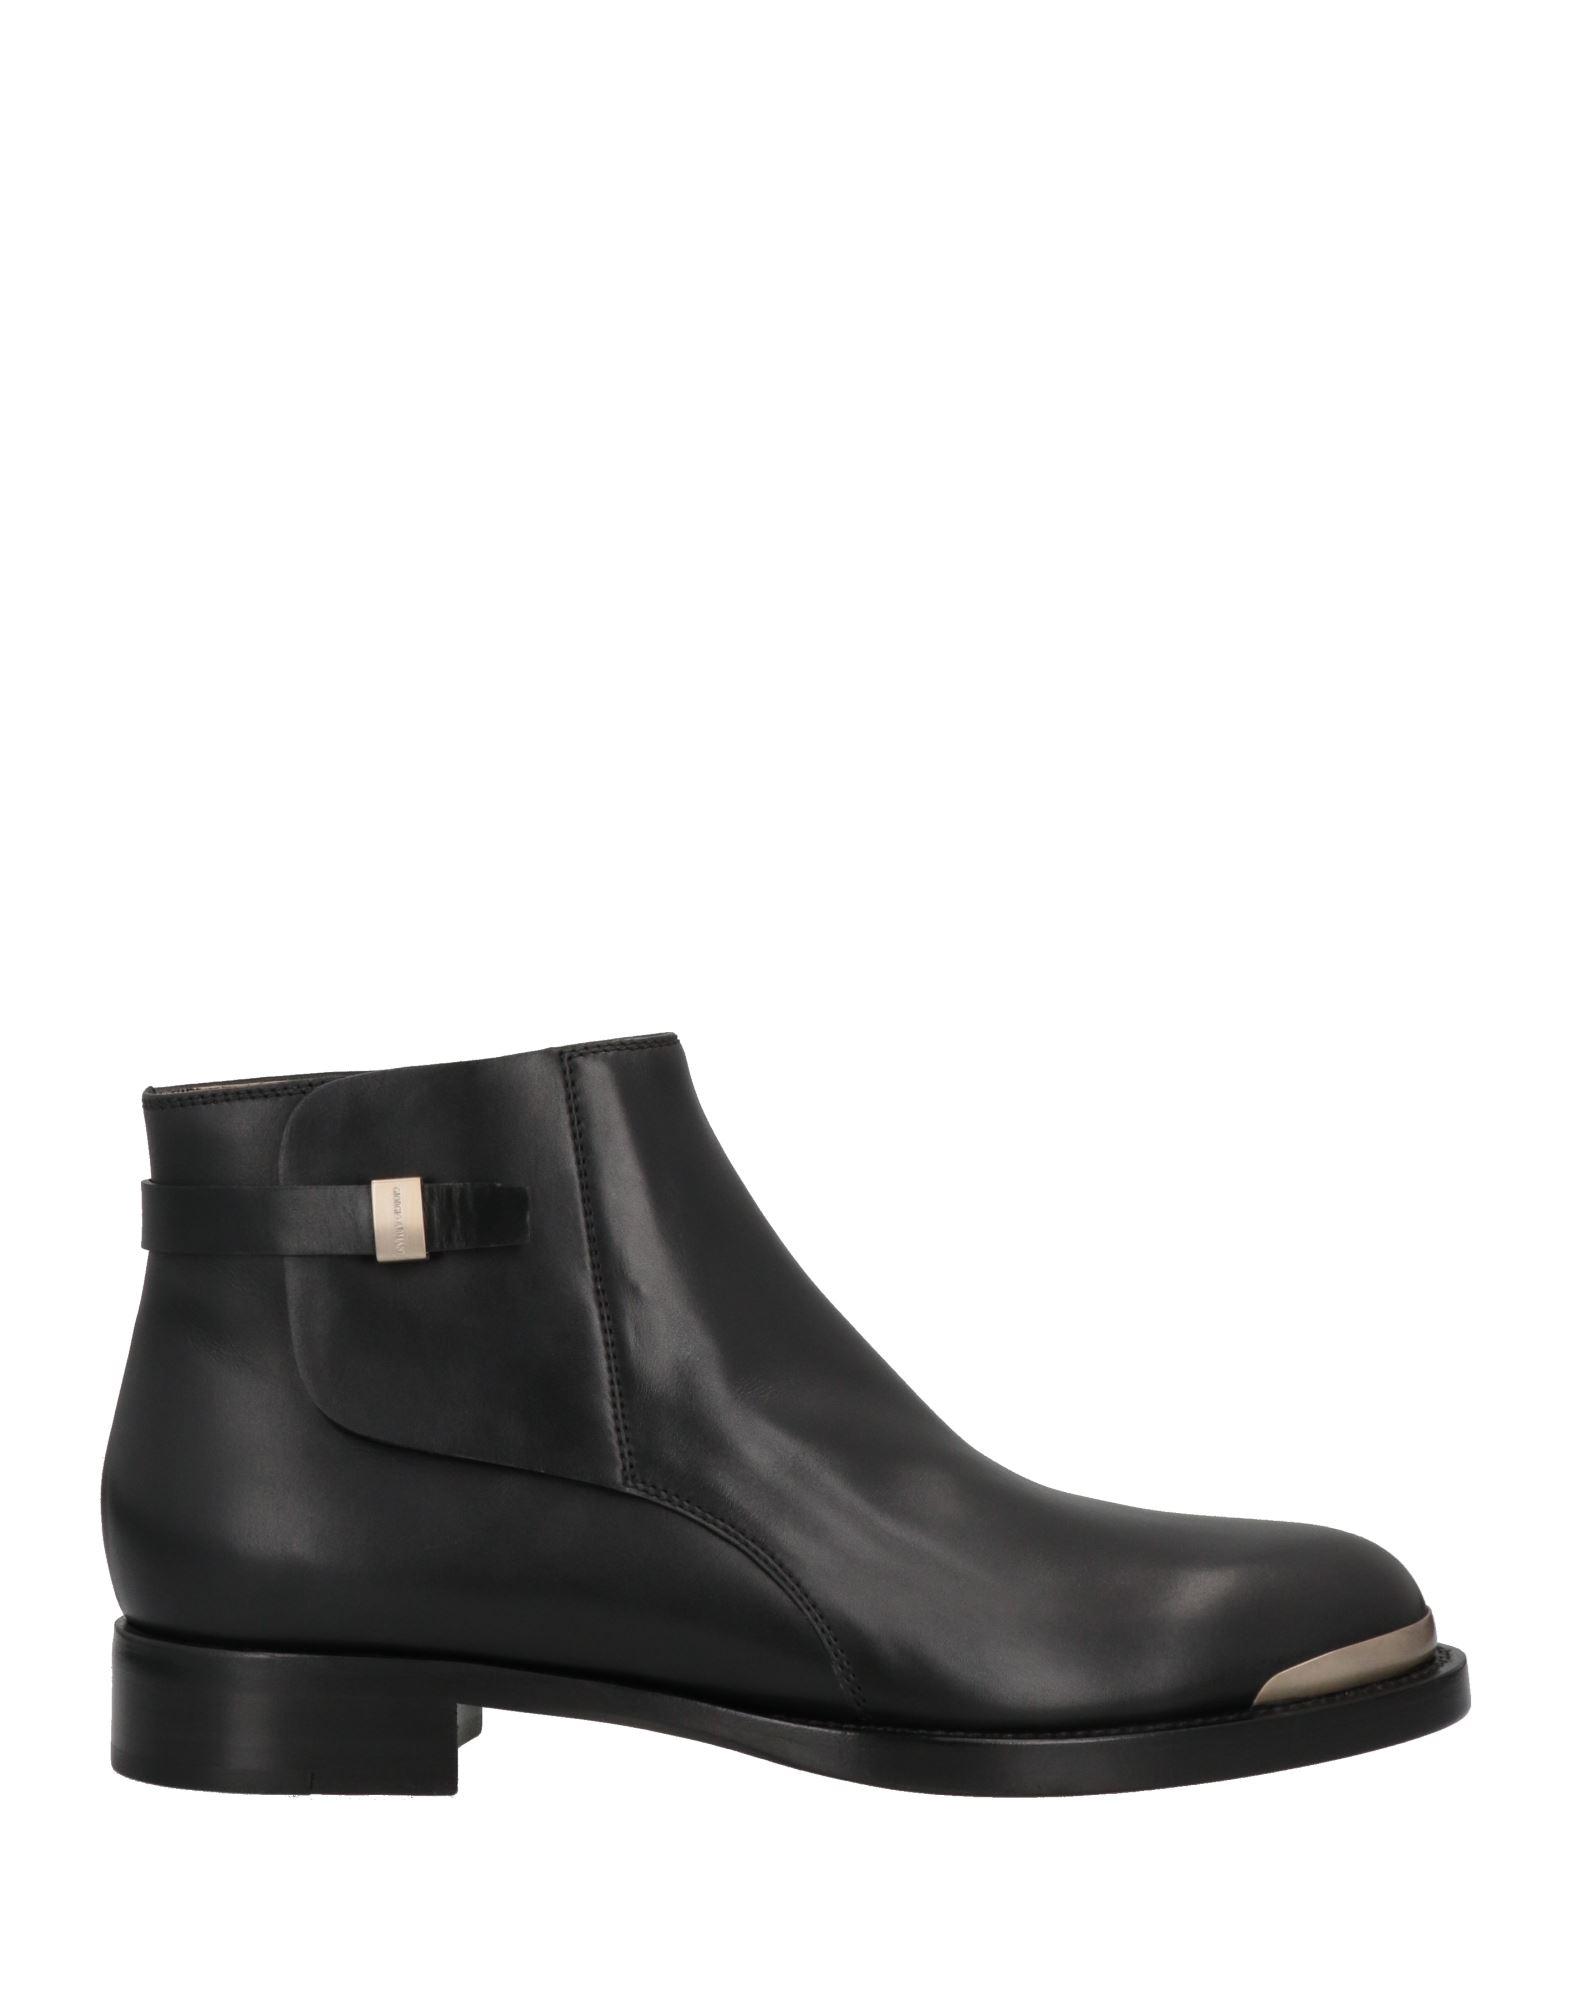 Giorgio Armani Ankle Boots in Black | Lyst